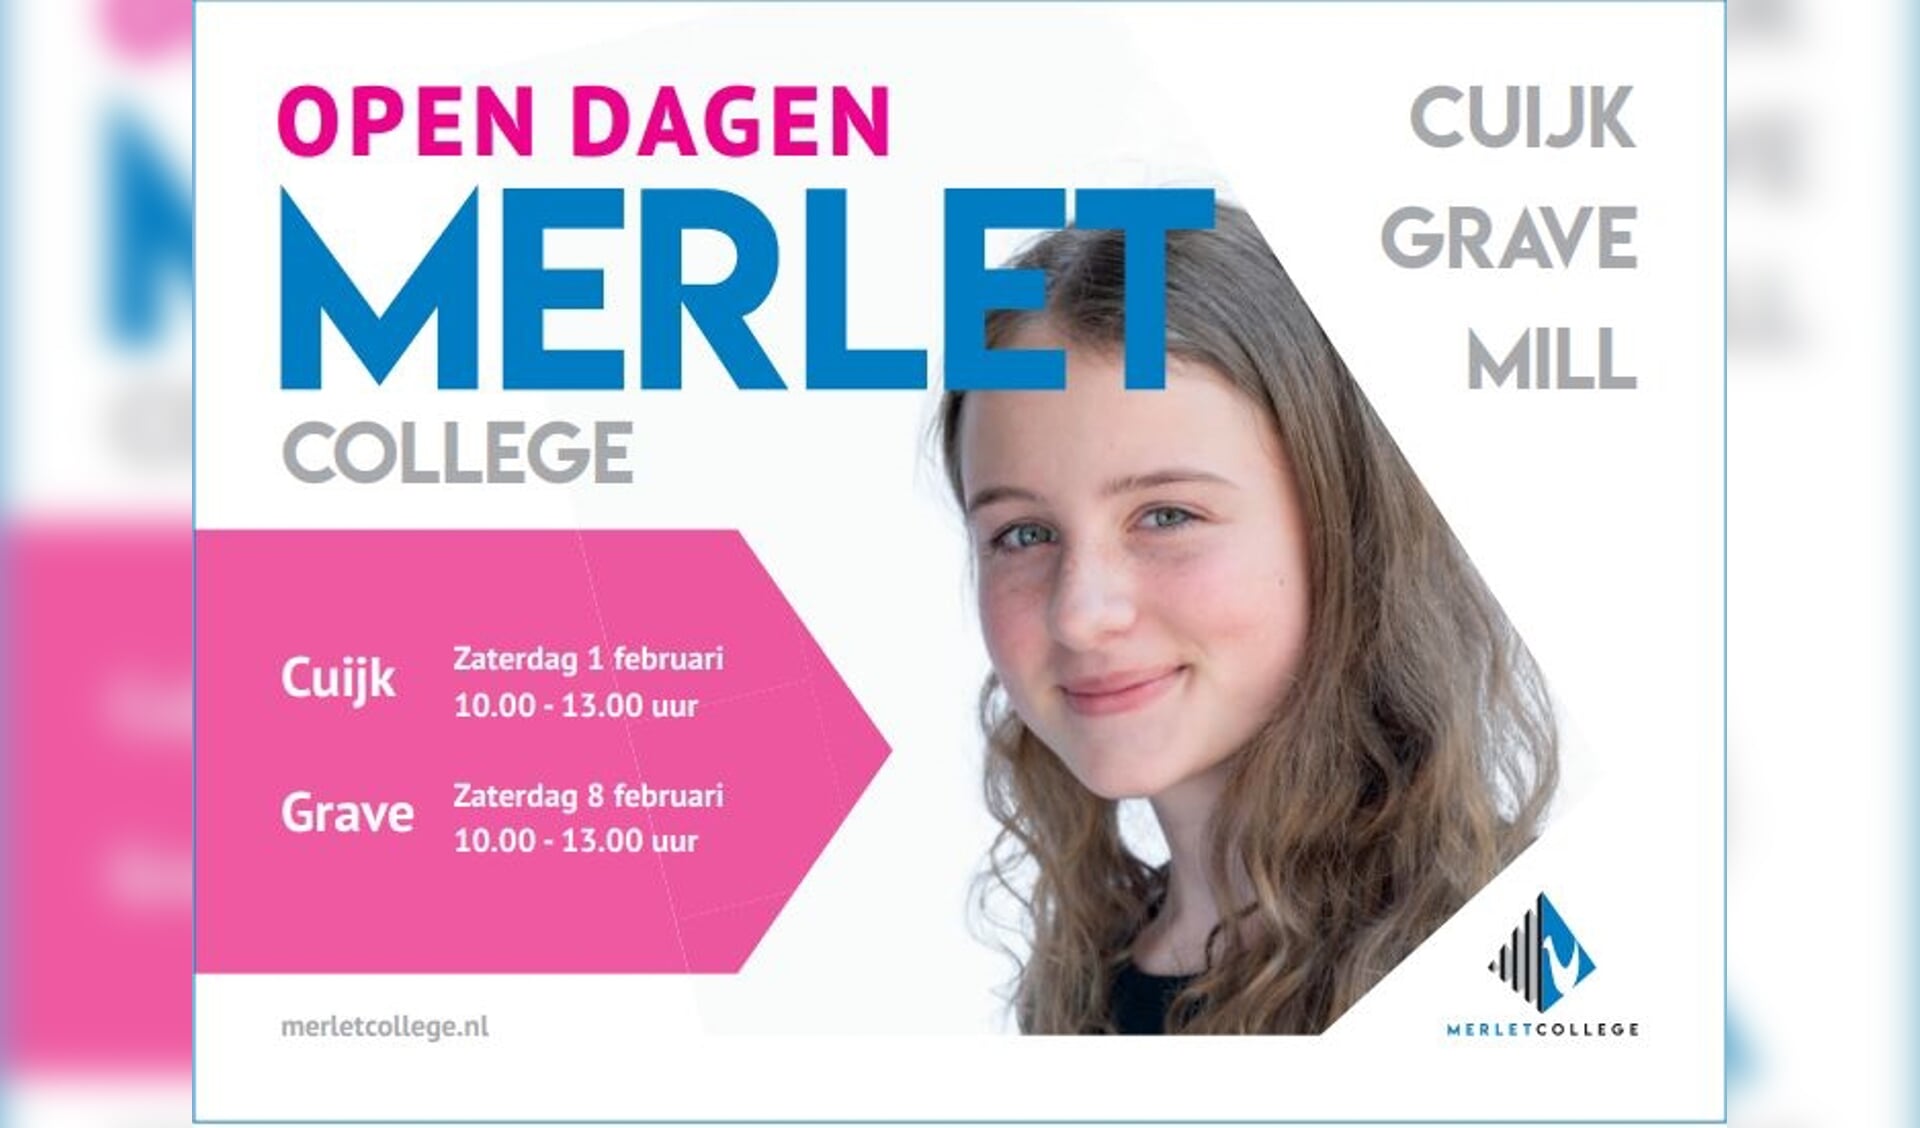 Open dagen bij Merletcollege in Cuijk en Grave.